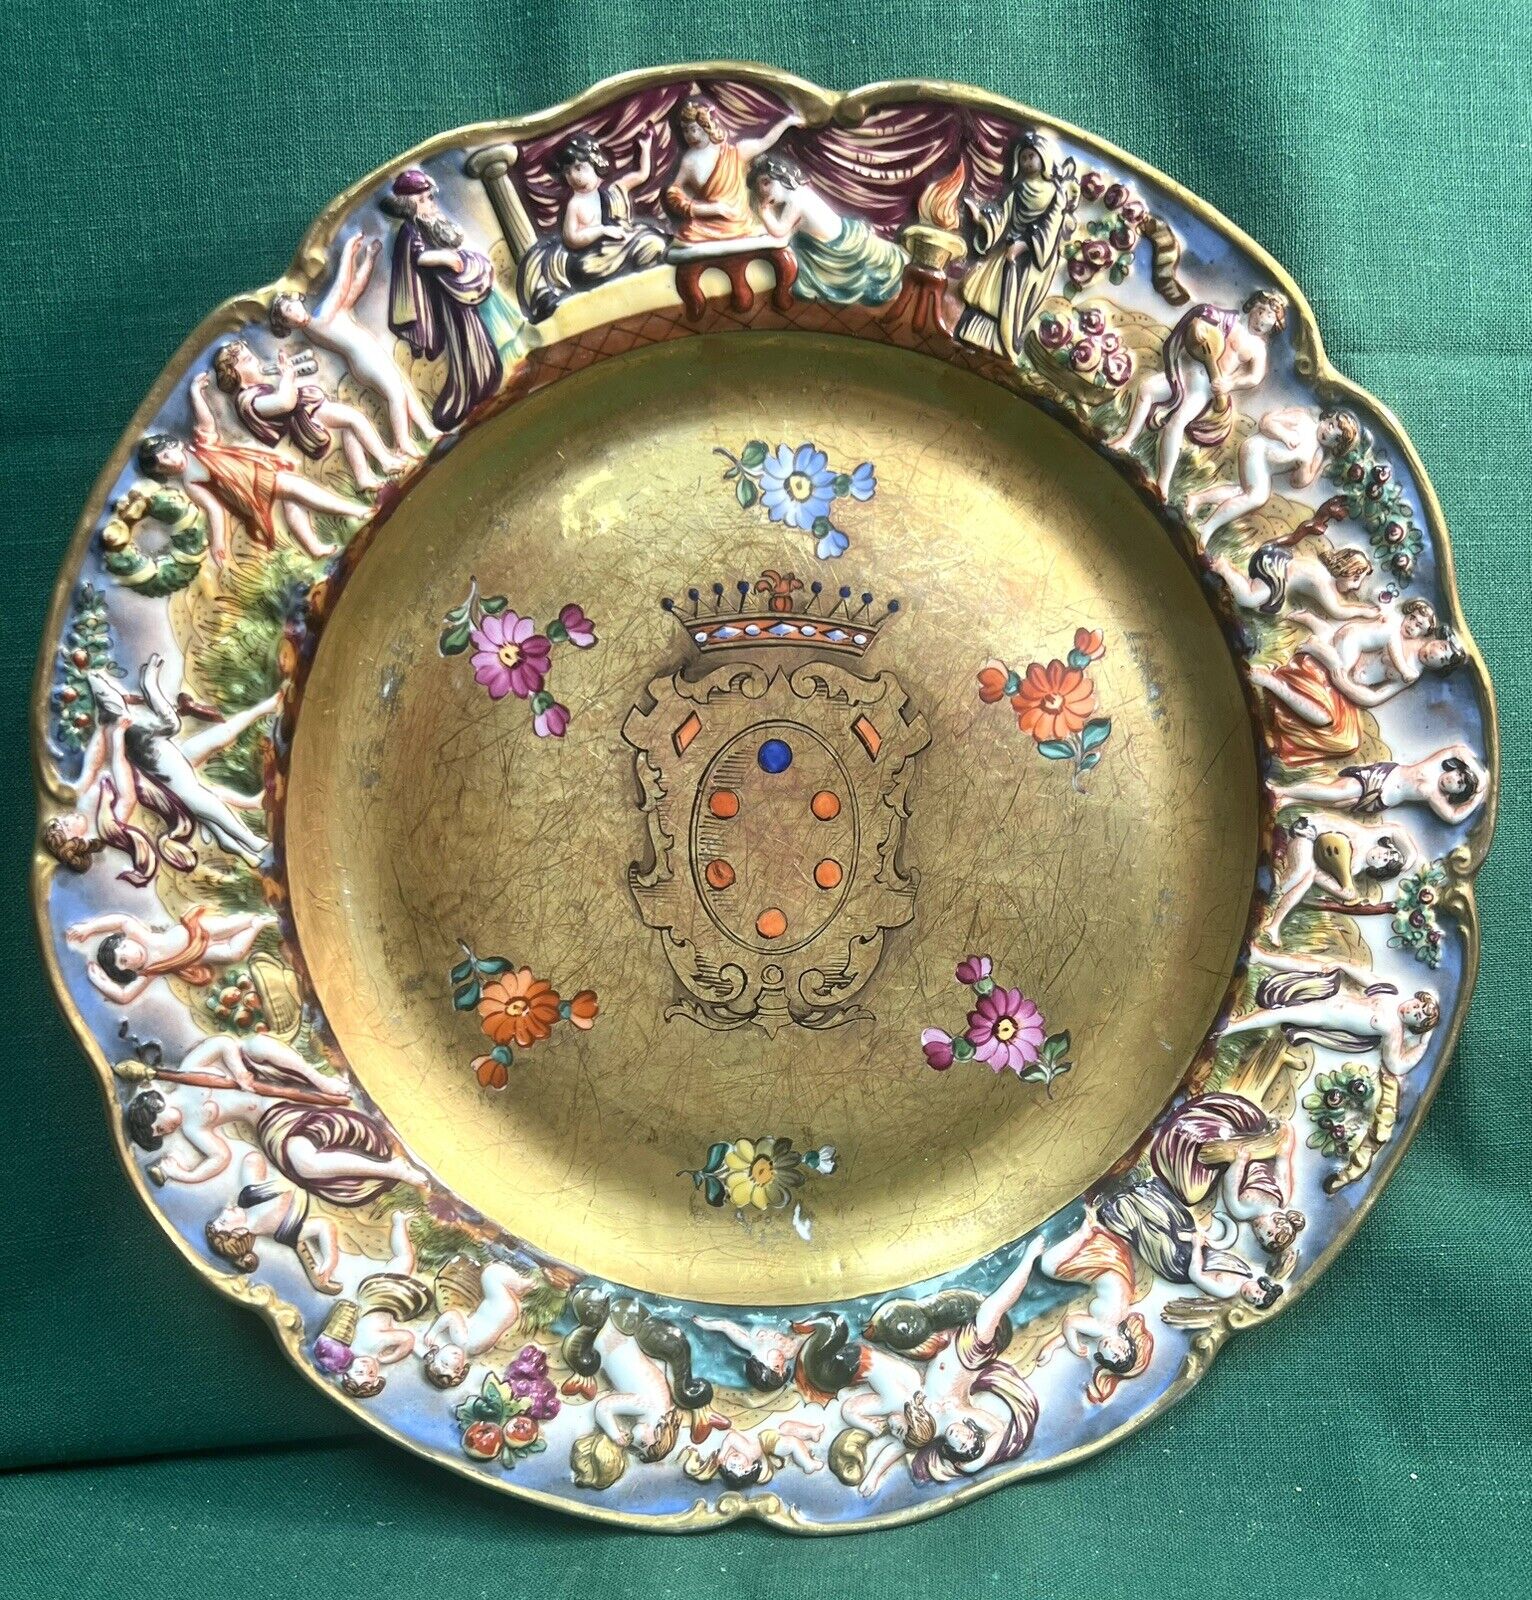 Capo di Monte  Early 1800s Large Plate, De Medici Crest  10 1/2”